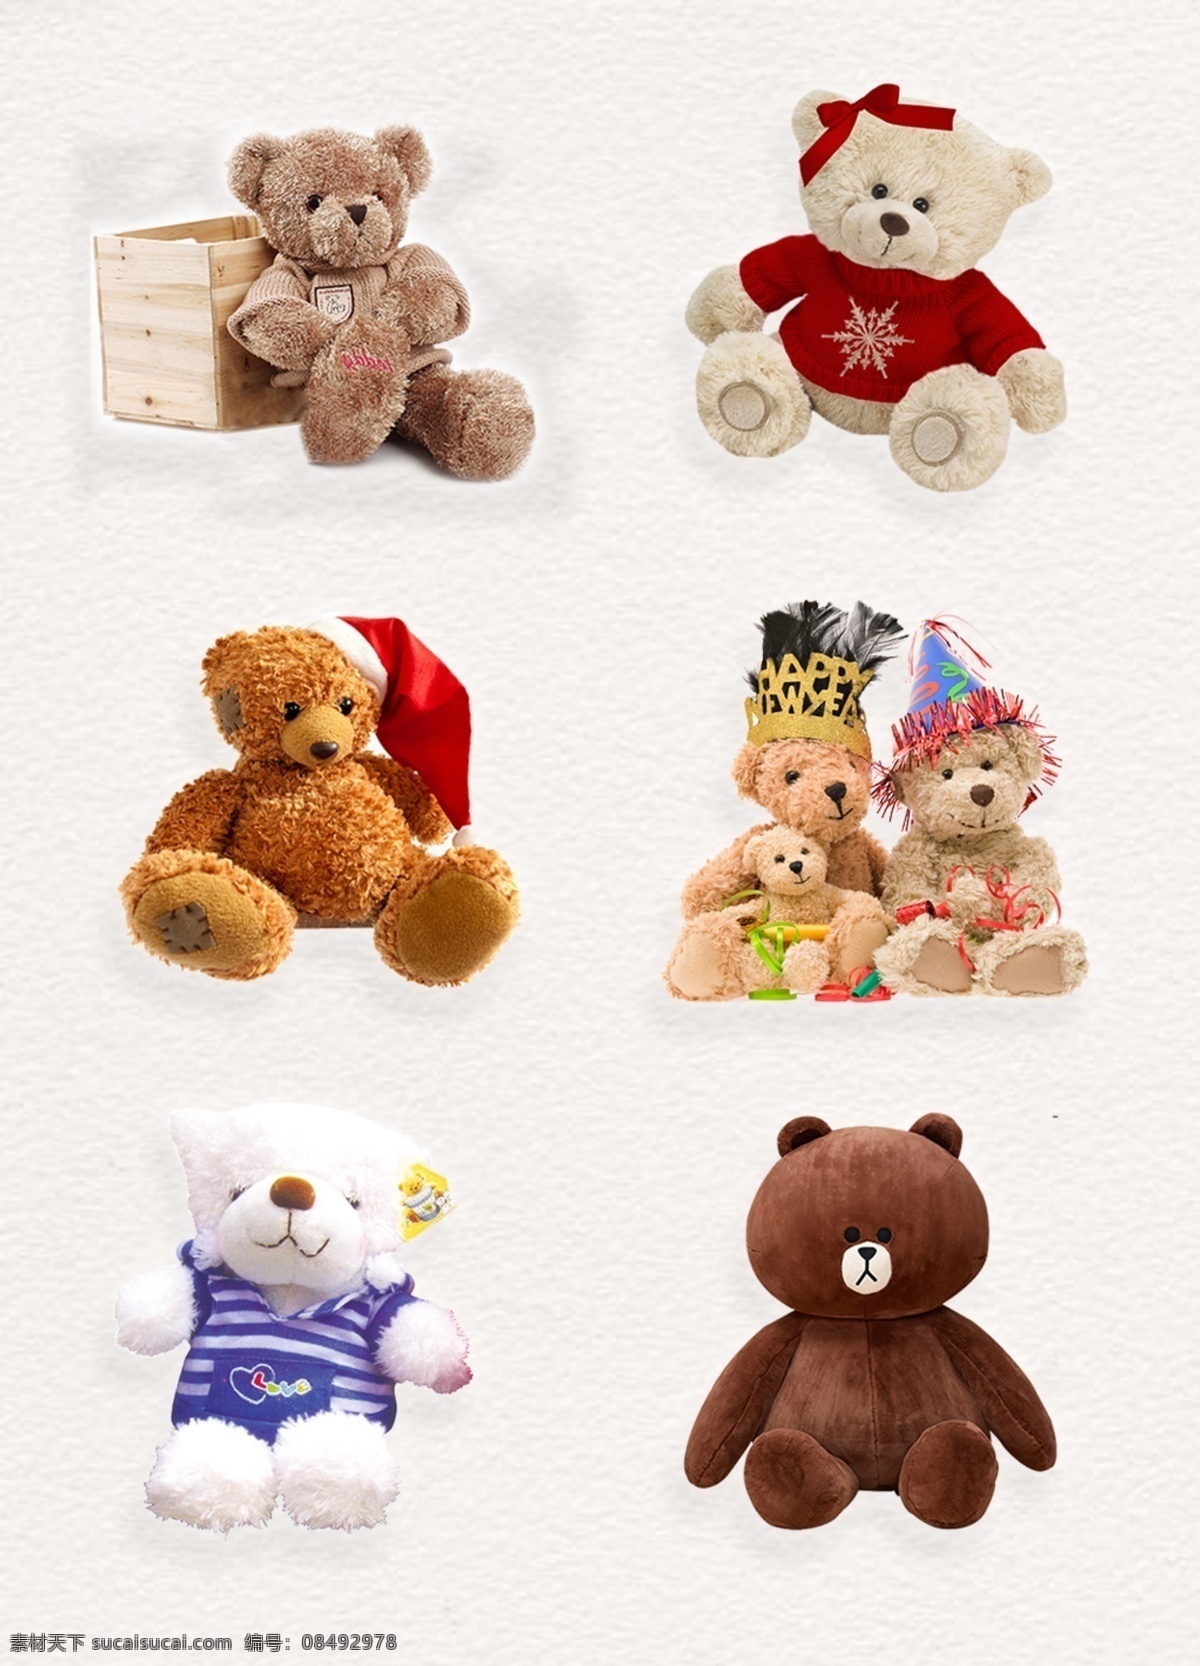 可爱 毛绒玩具 熊 设计素材 玩具 礼物 惊喜 泰迪熊 产品实物 毛绒 可爱毛绒玩具 可爱玩具熊 毛绒泰迪熊 小孩子的玩具